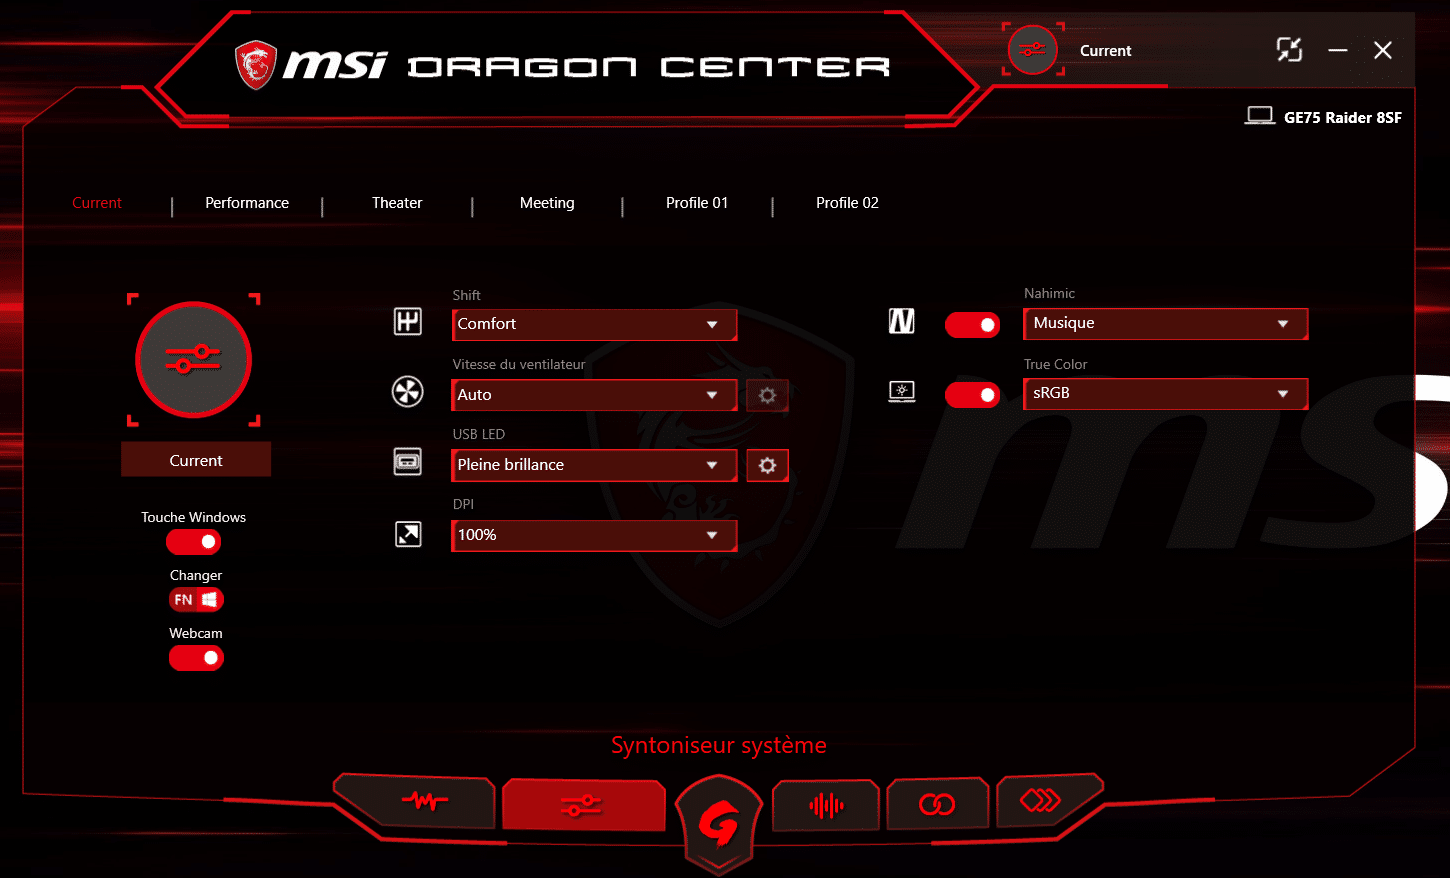 msi dragon center shift modes